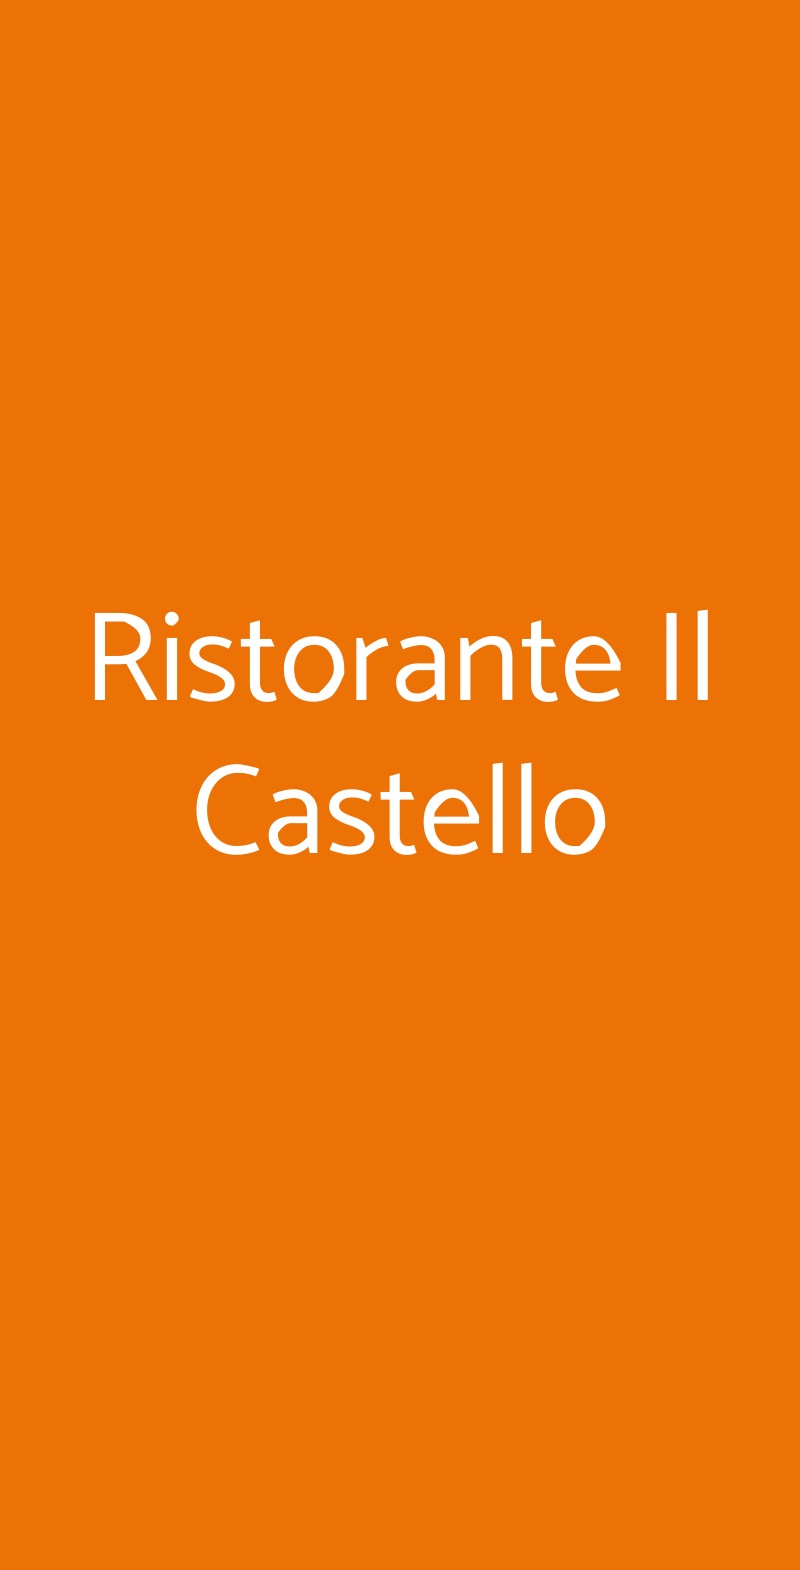 Ristorante Il Castello Milano menù 1 pagina